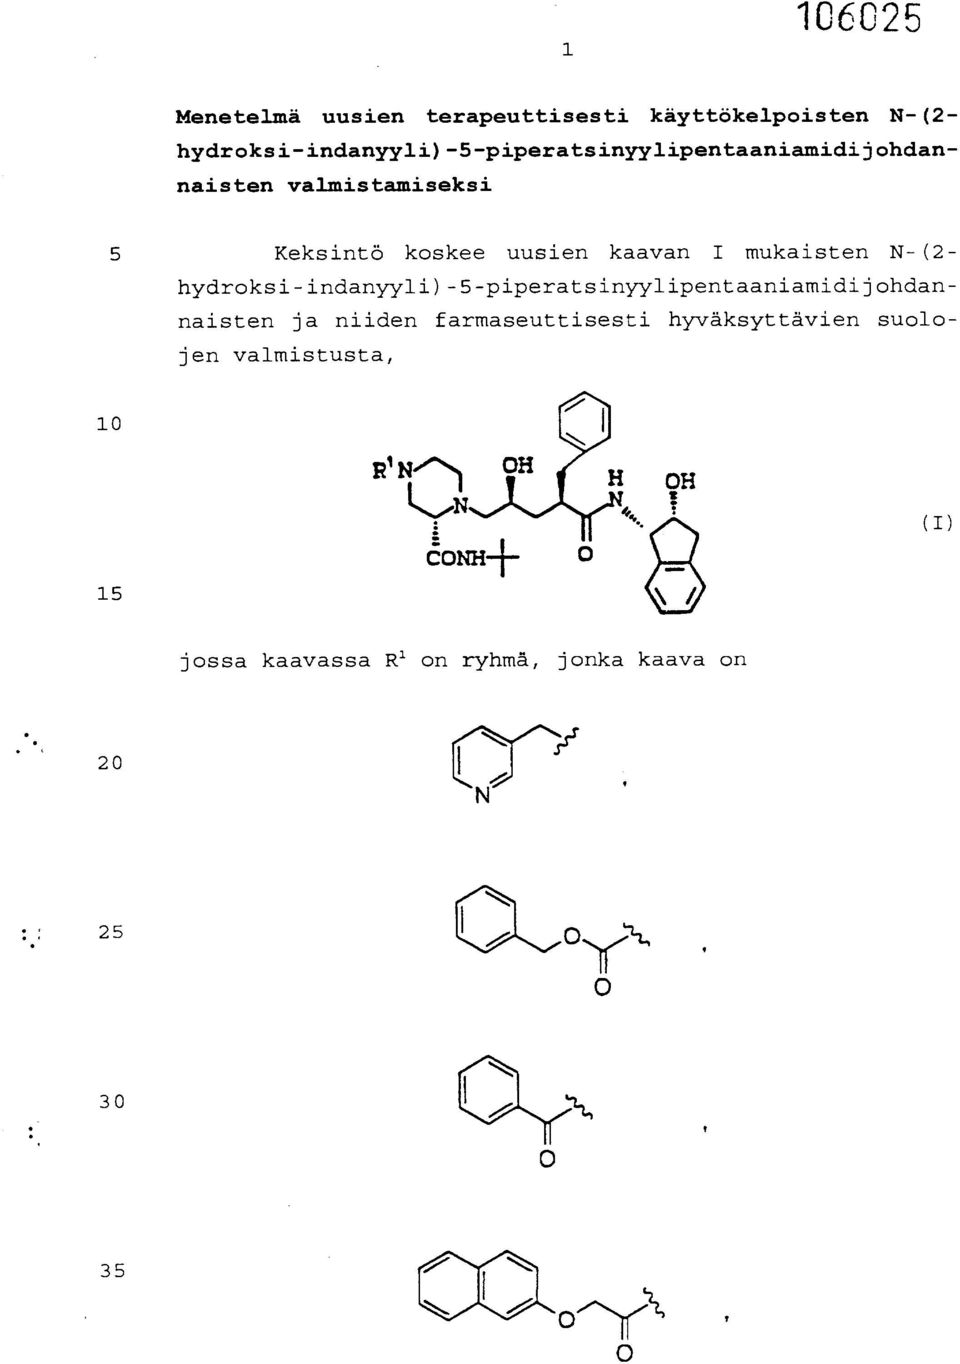 uusien kaavan I mukaisten N-(2- hydroksi-indanyyli)-5-piperatsinyylipentaaniamidijohdannaisten ja